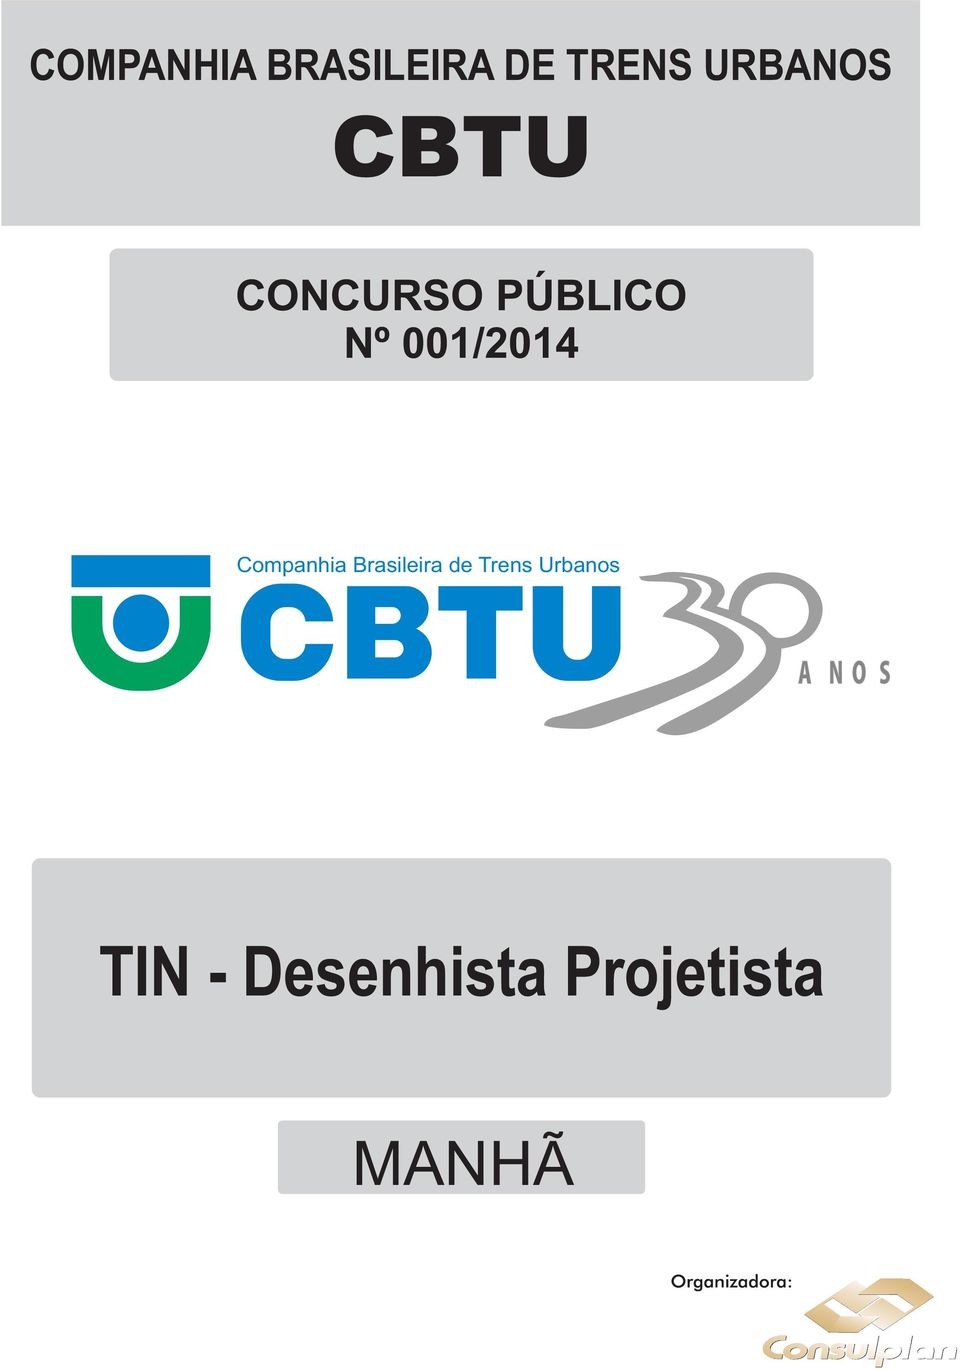 Companhia Brasileira de Trens Urbanos